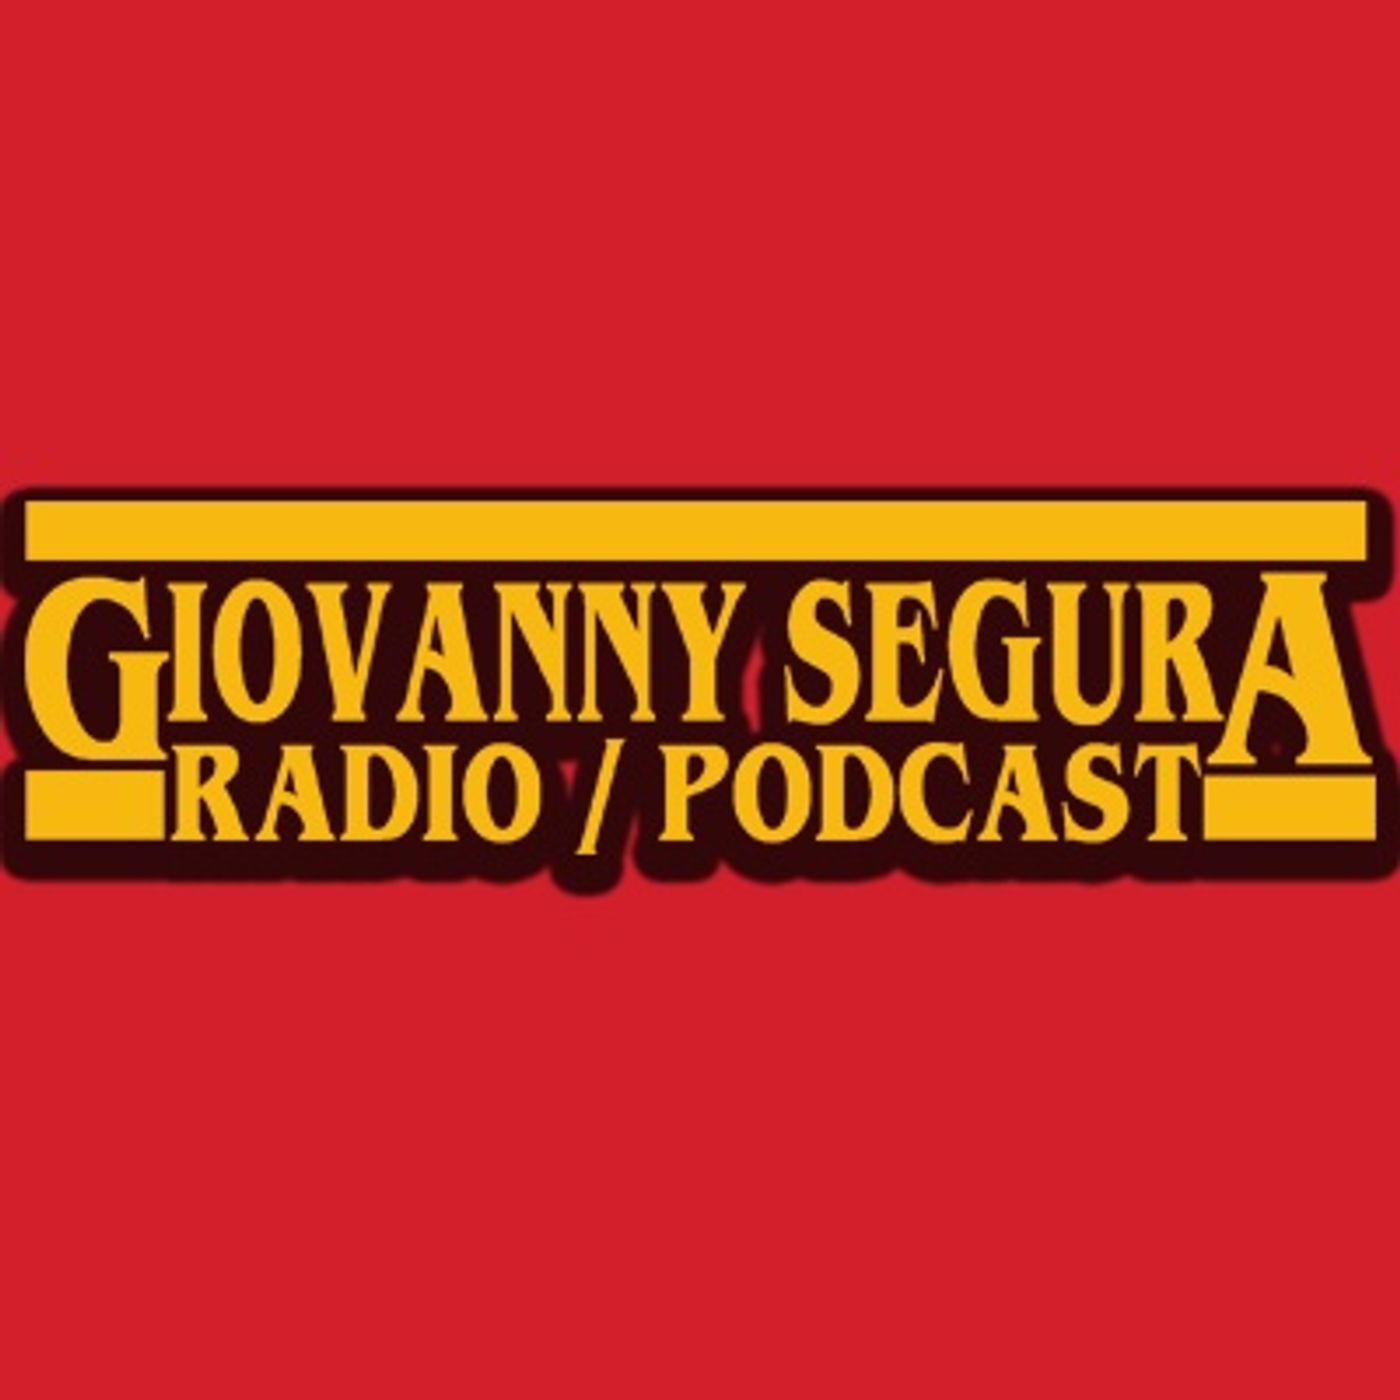 Giovanny Segura Podcast I